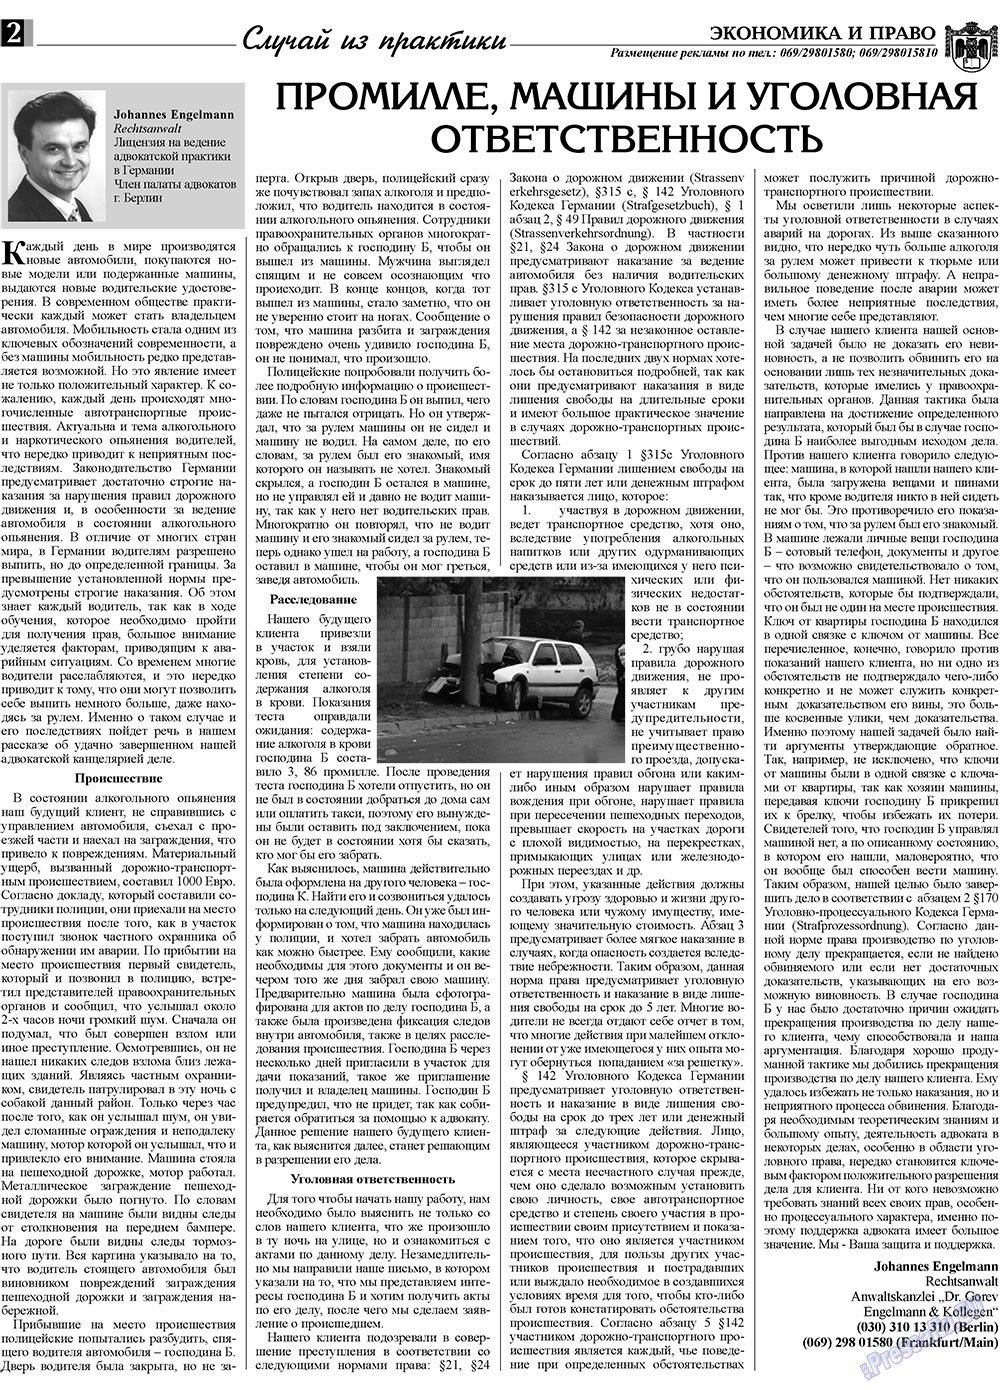 Экономика и право, газета. 2009 №2 стр.2